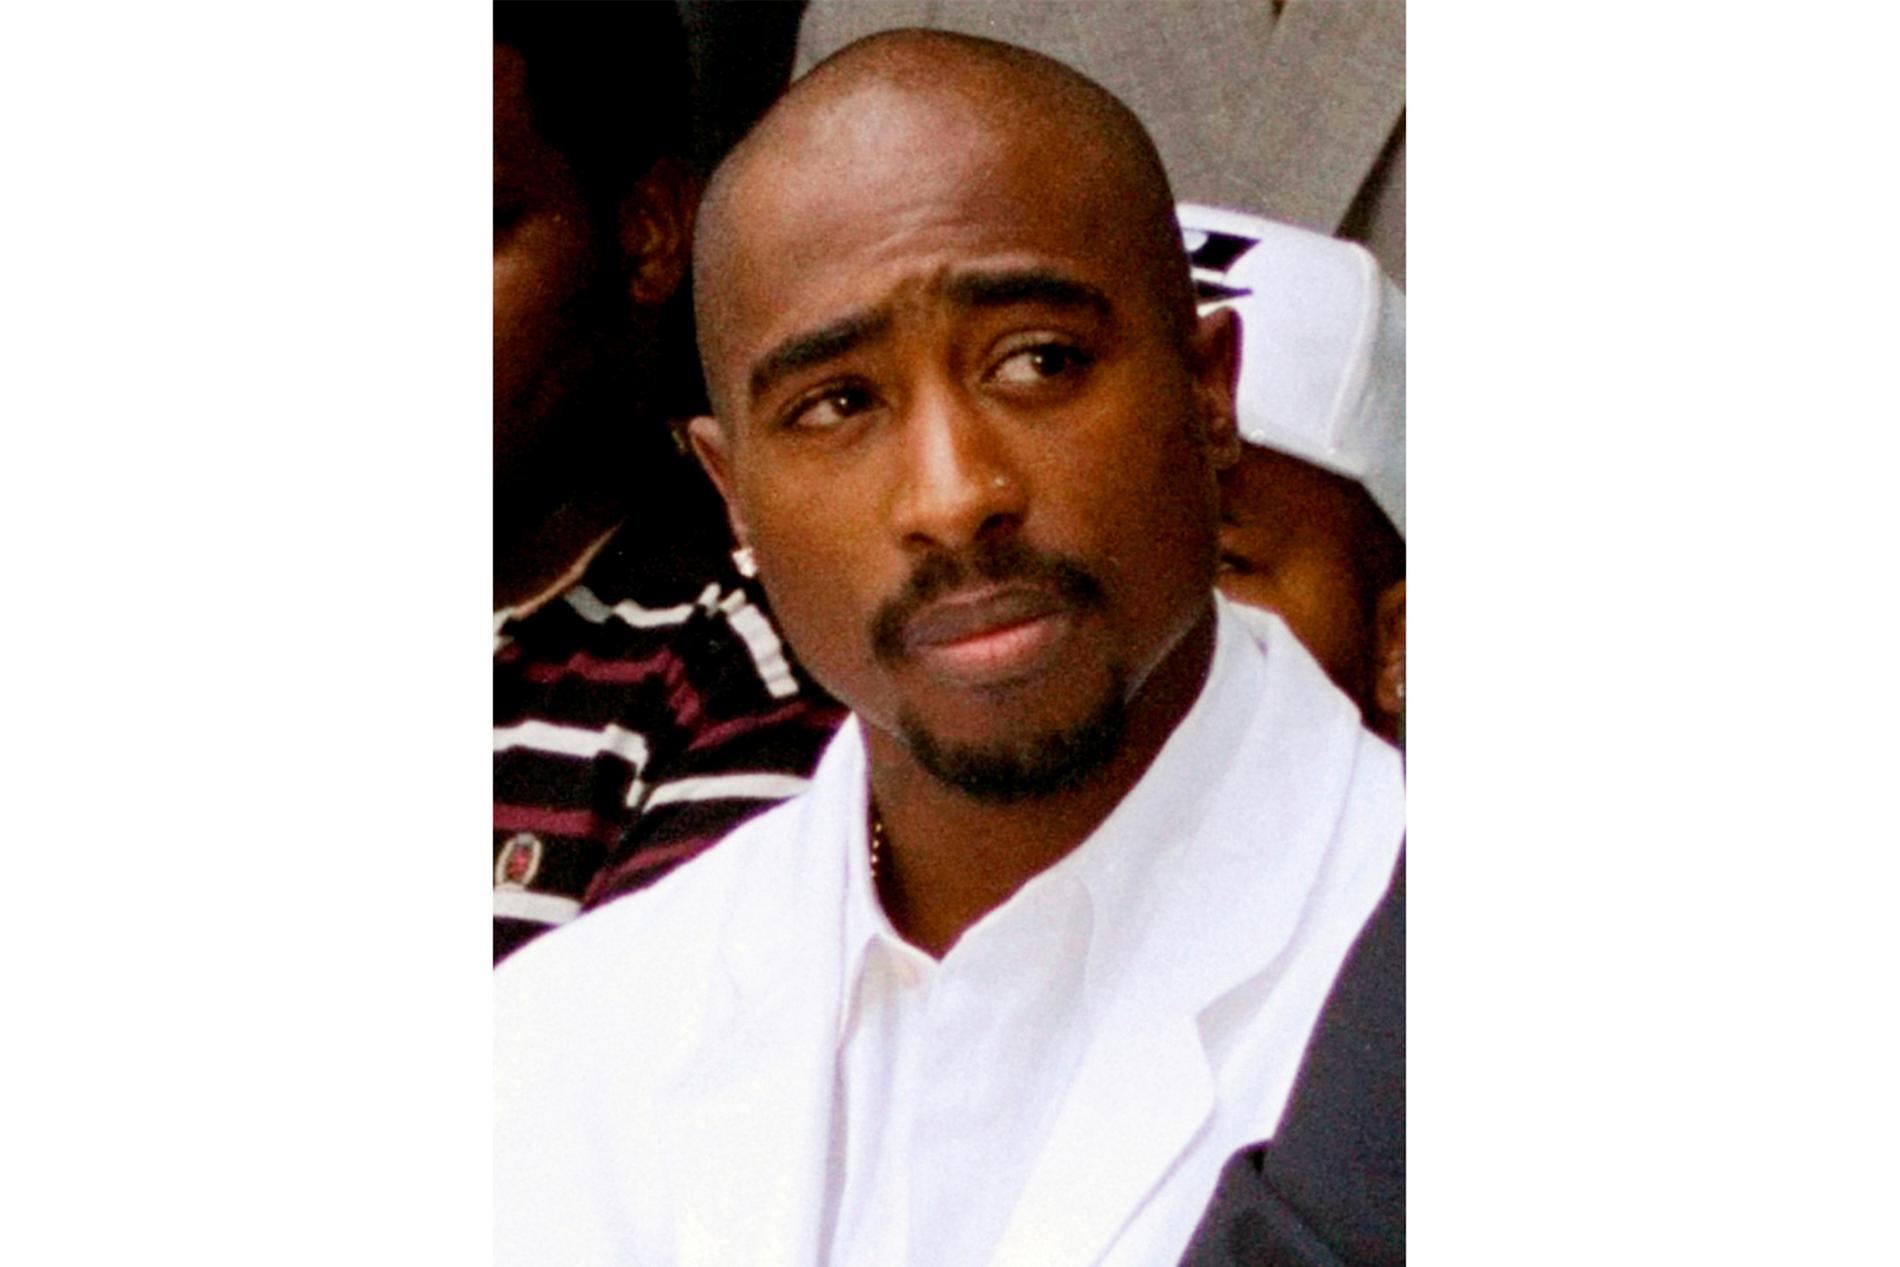 Den amerikanske rapperen Tupac Shakur ble drept i Las Vegas i 1996, kun 25 år gammel. Mer enn 27 år etter drapet har politiet foretatt den første pågripelsen i saken. 